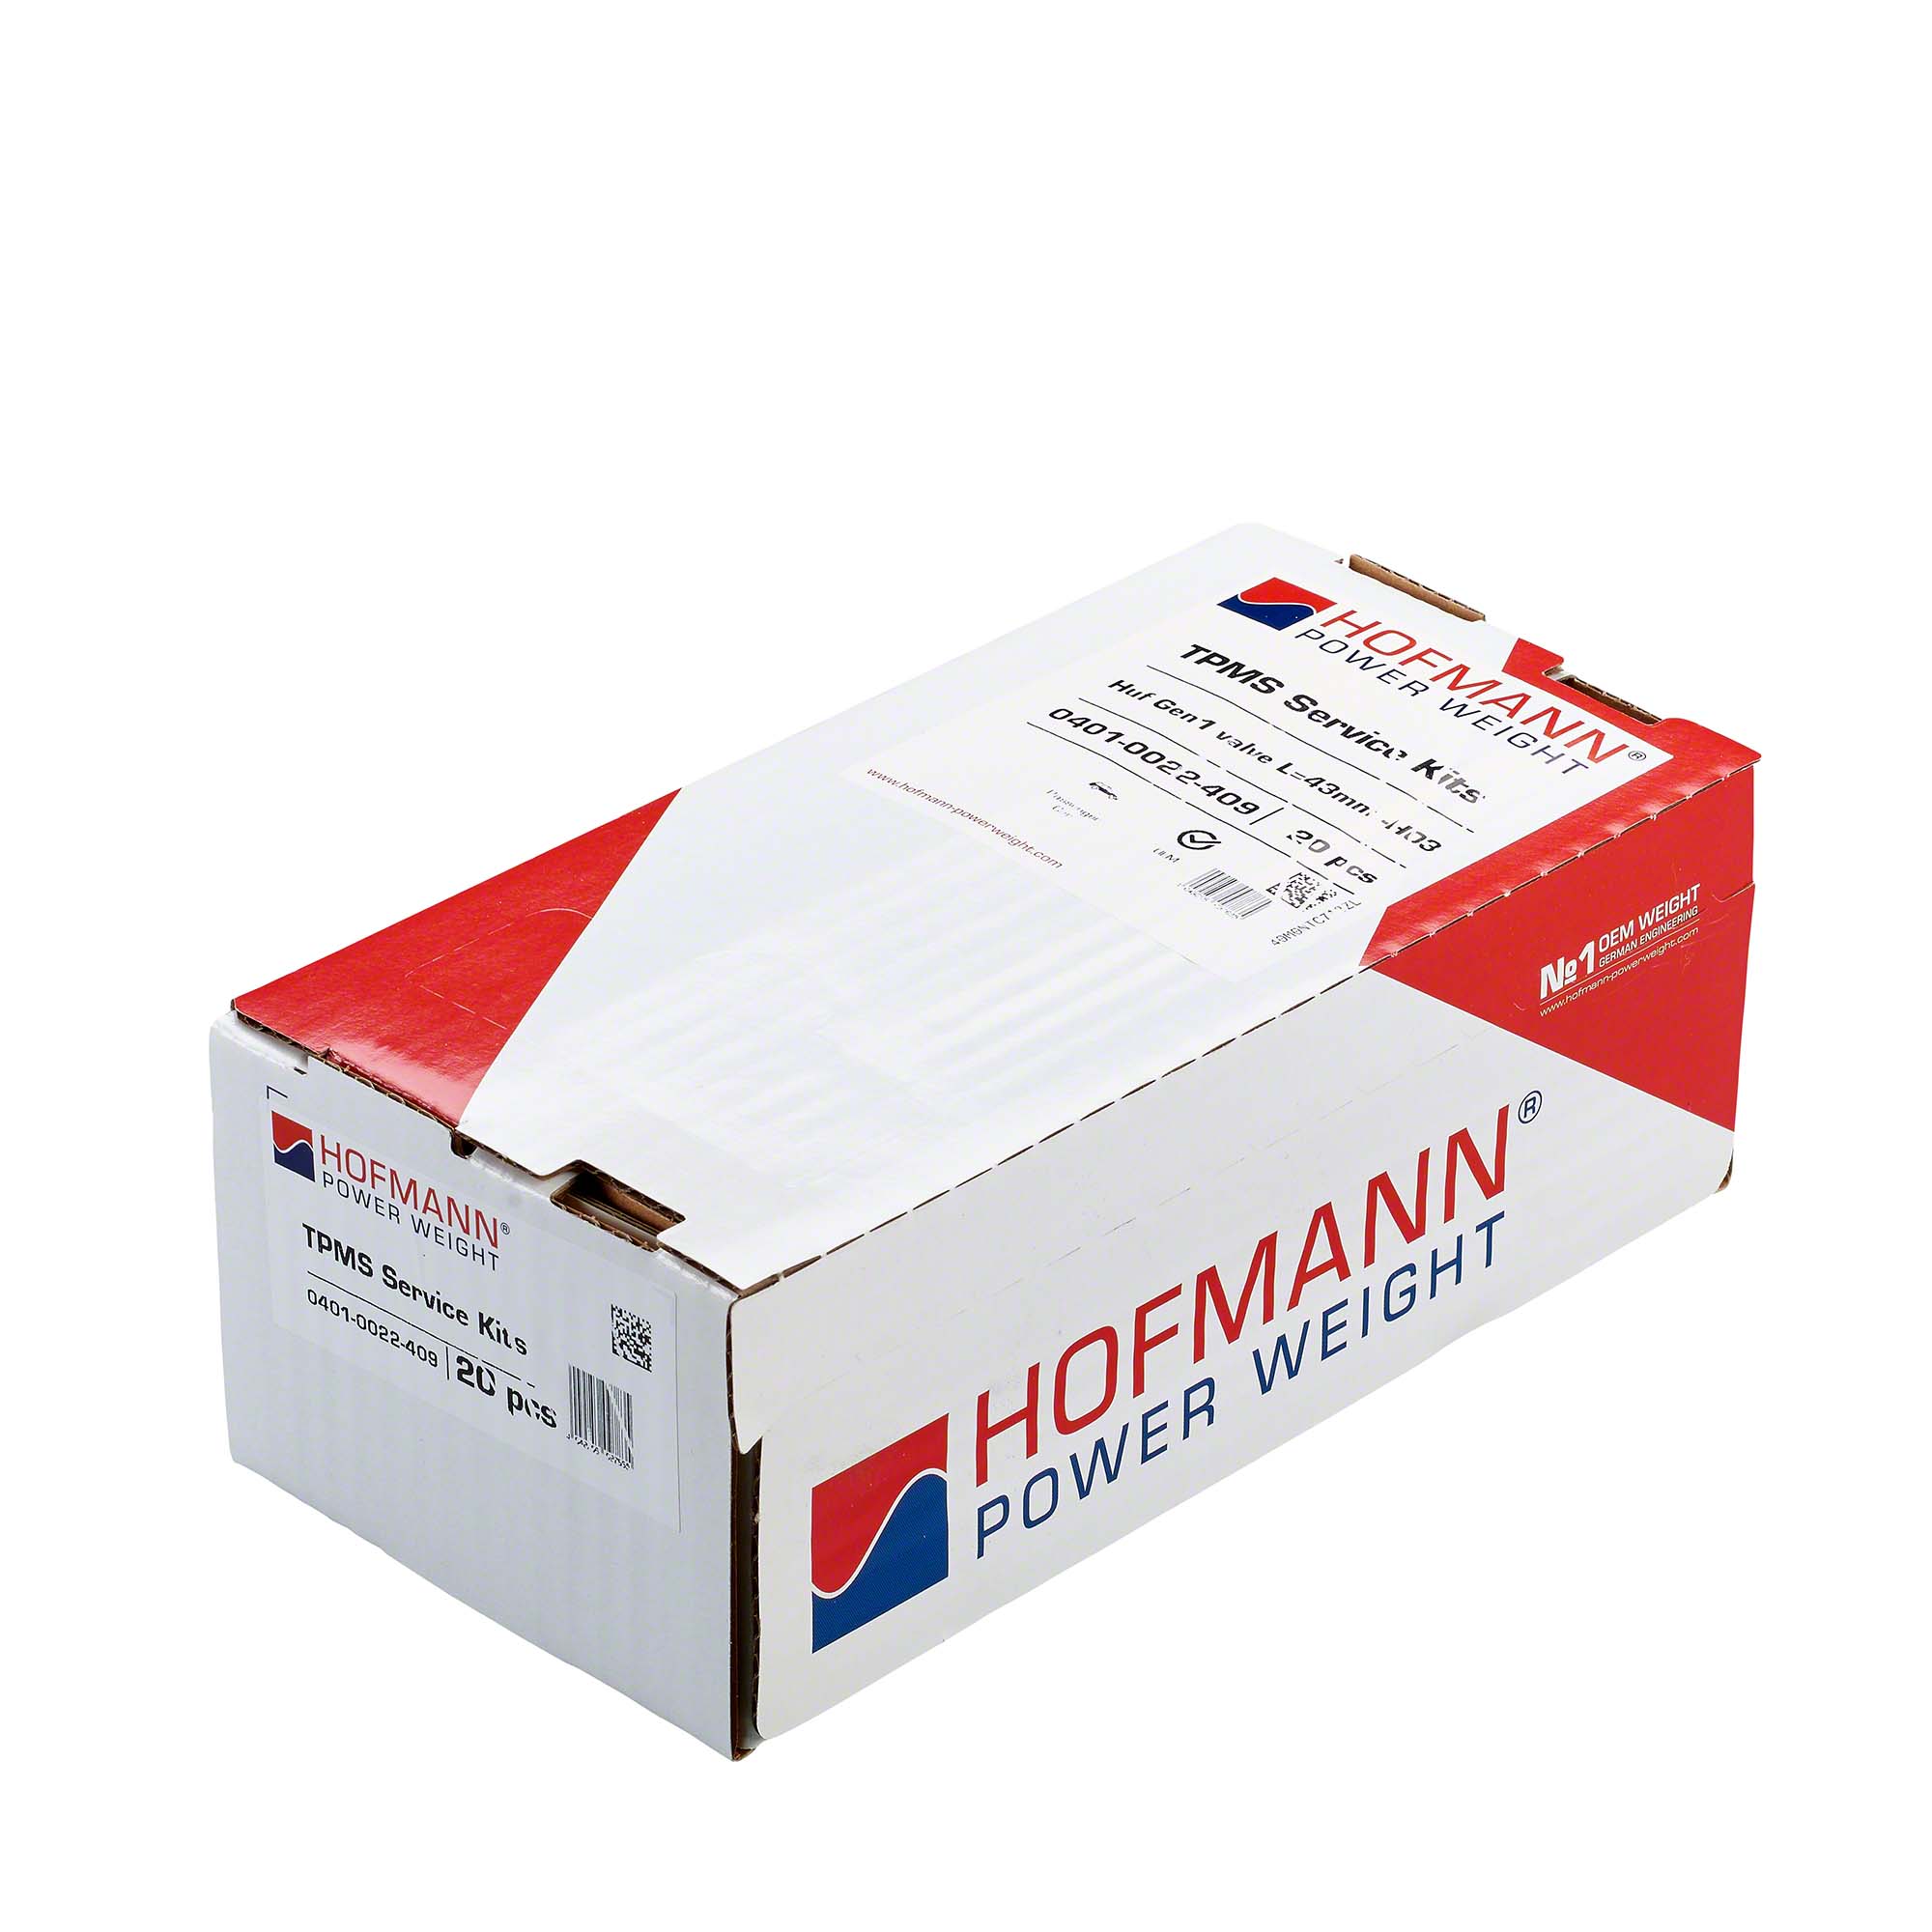 HOFMANN POWER WEIGHT-RDKS Service-Kit - H03, BMW-0401-0022-409